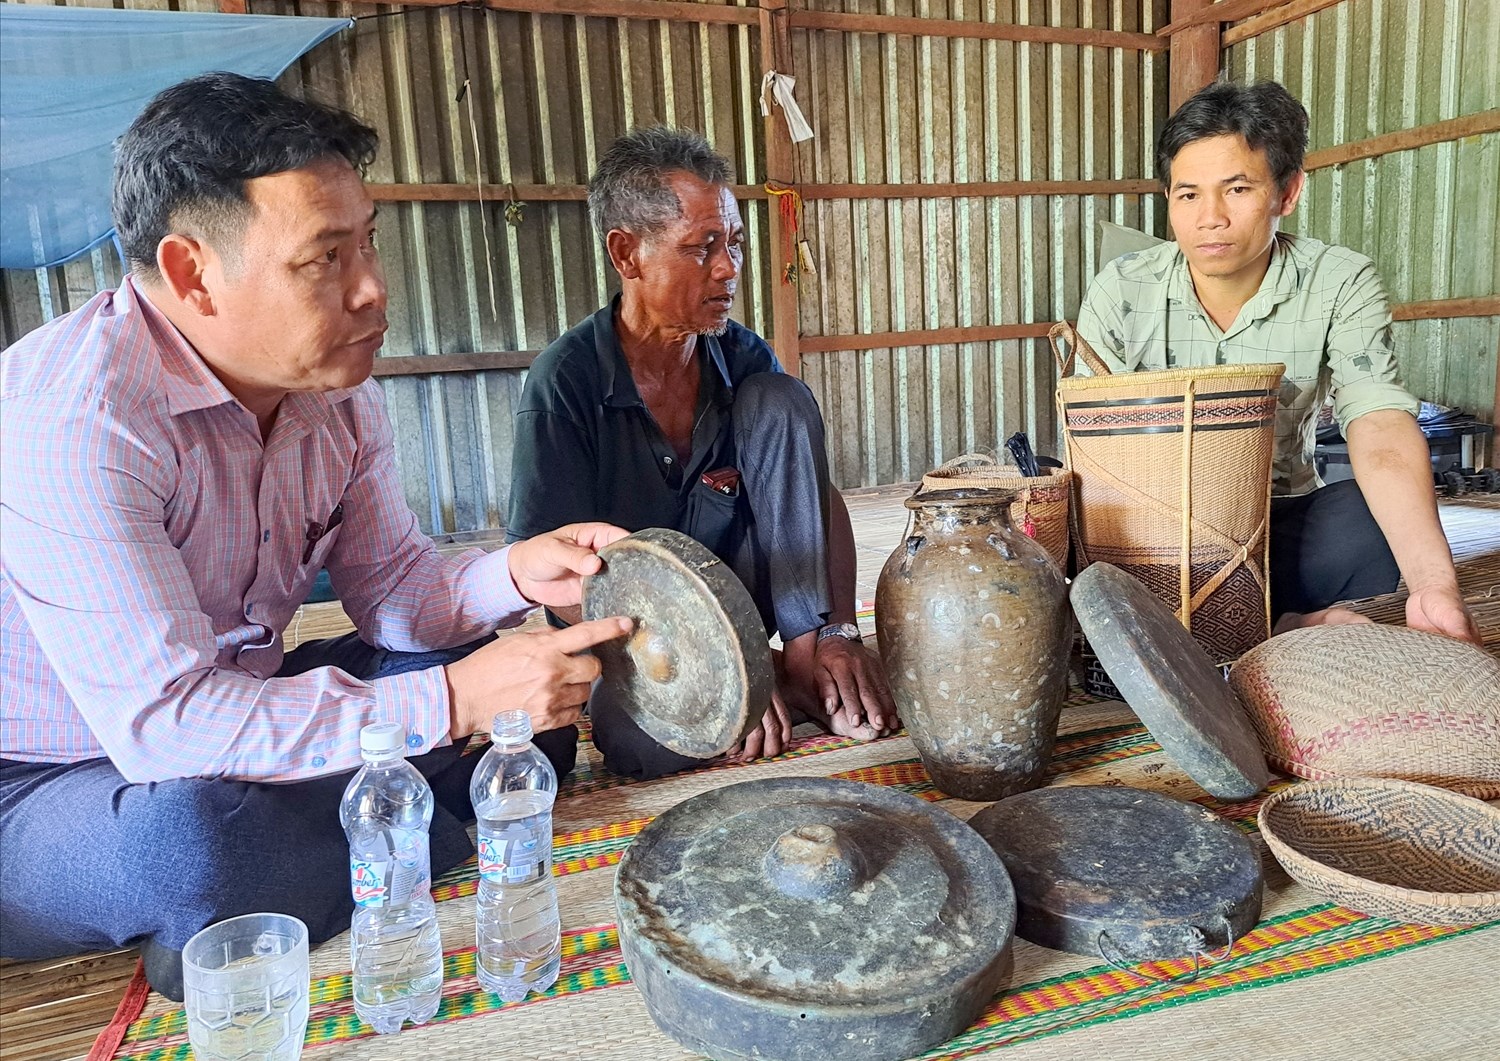 Đồng bào miền núi Bình Định luôn ý thức giữ gìn, bảo tồn những nét văn hoá truyền thống